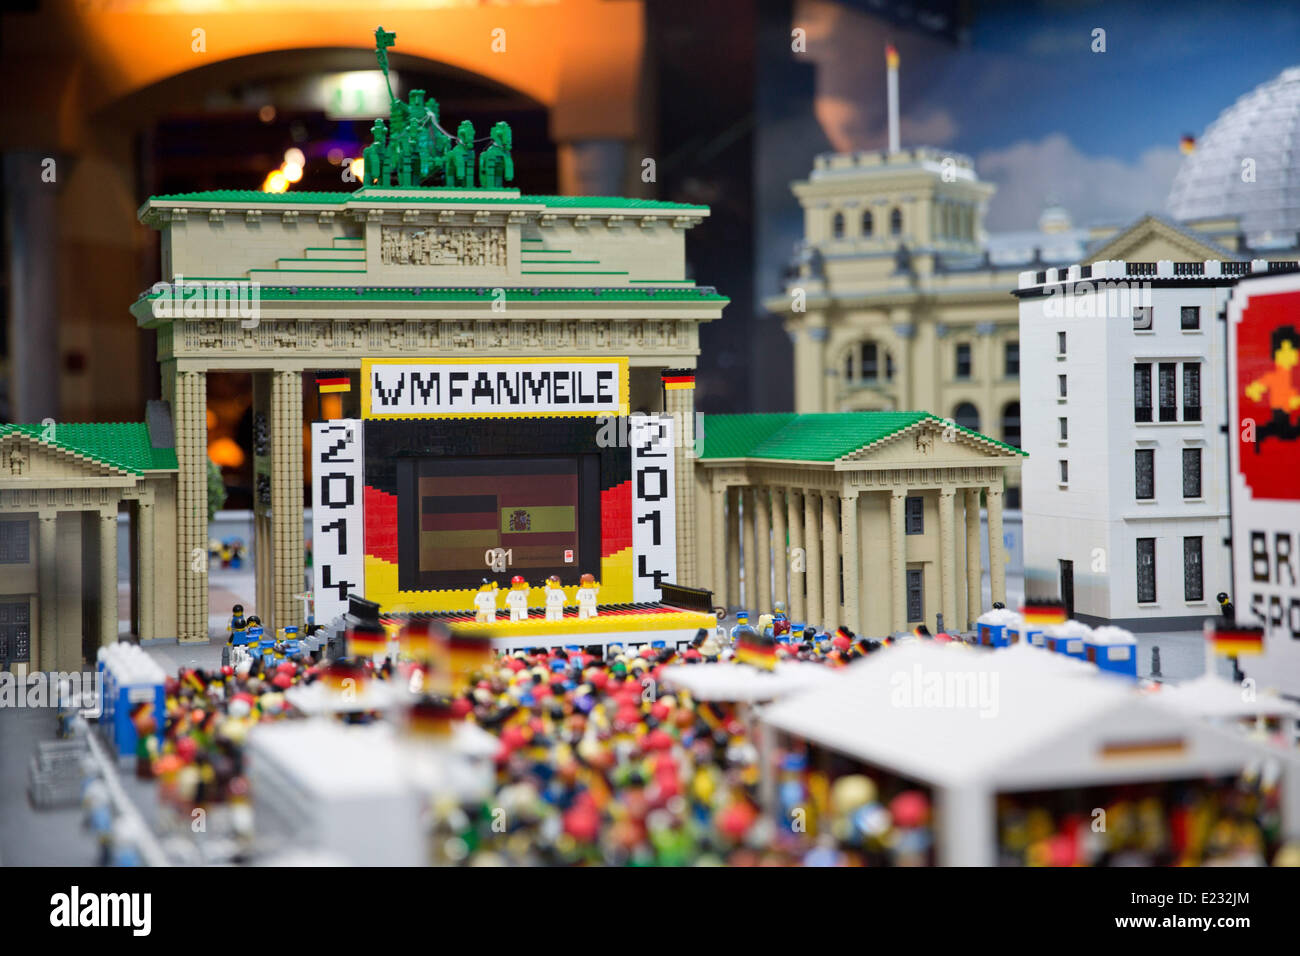 Berlin, Deutschland. 14. Juni 2014. Eine WM-Fanmeile mit dem Brandenburger  Tor wurde aus Legosteinen im Legoland Discovery Centre in Berlin,  Deutschland, 14. Juni 2014 gebaut. Fast 30.000 LEGO Ziegelsteine dienten im  Prinzip